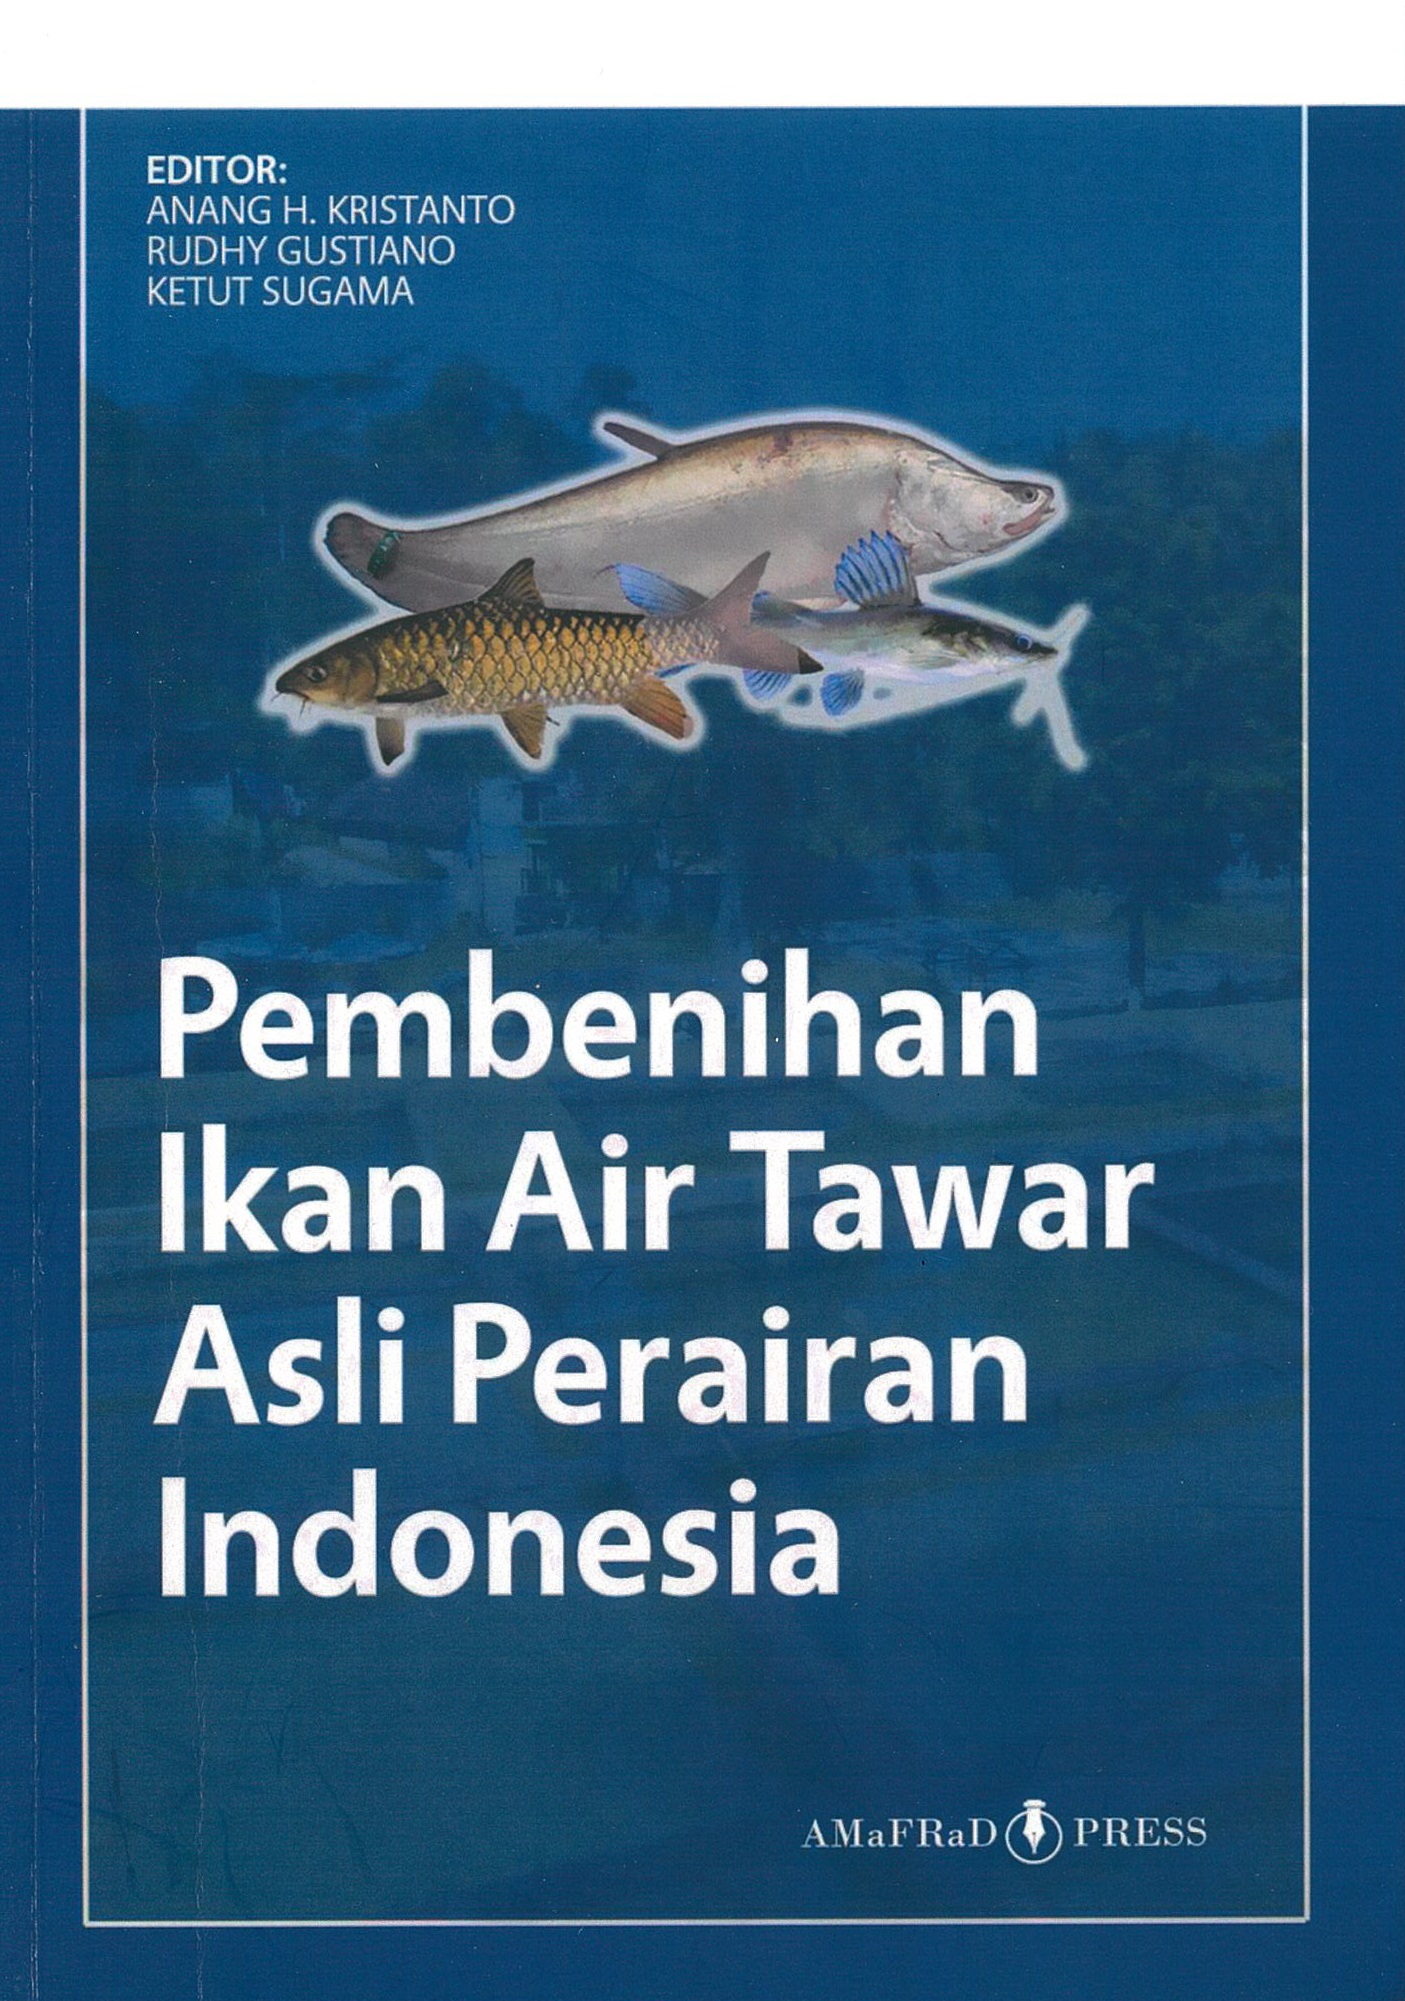 Pembenihan ikan air tawar asli perairan Indonesia